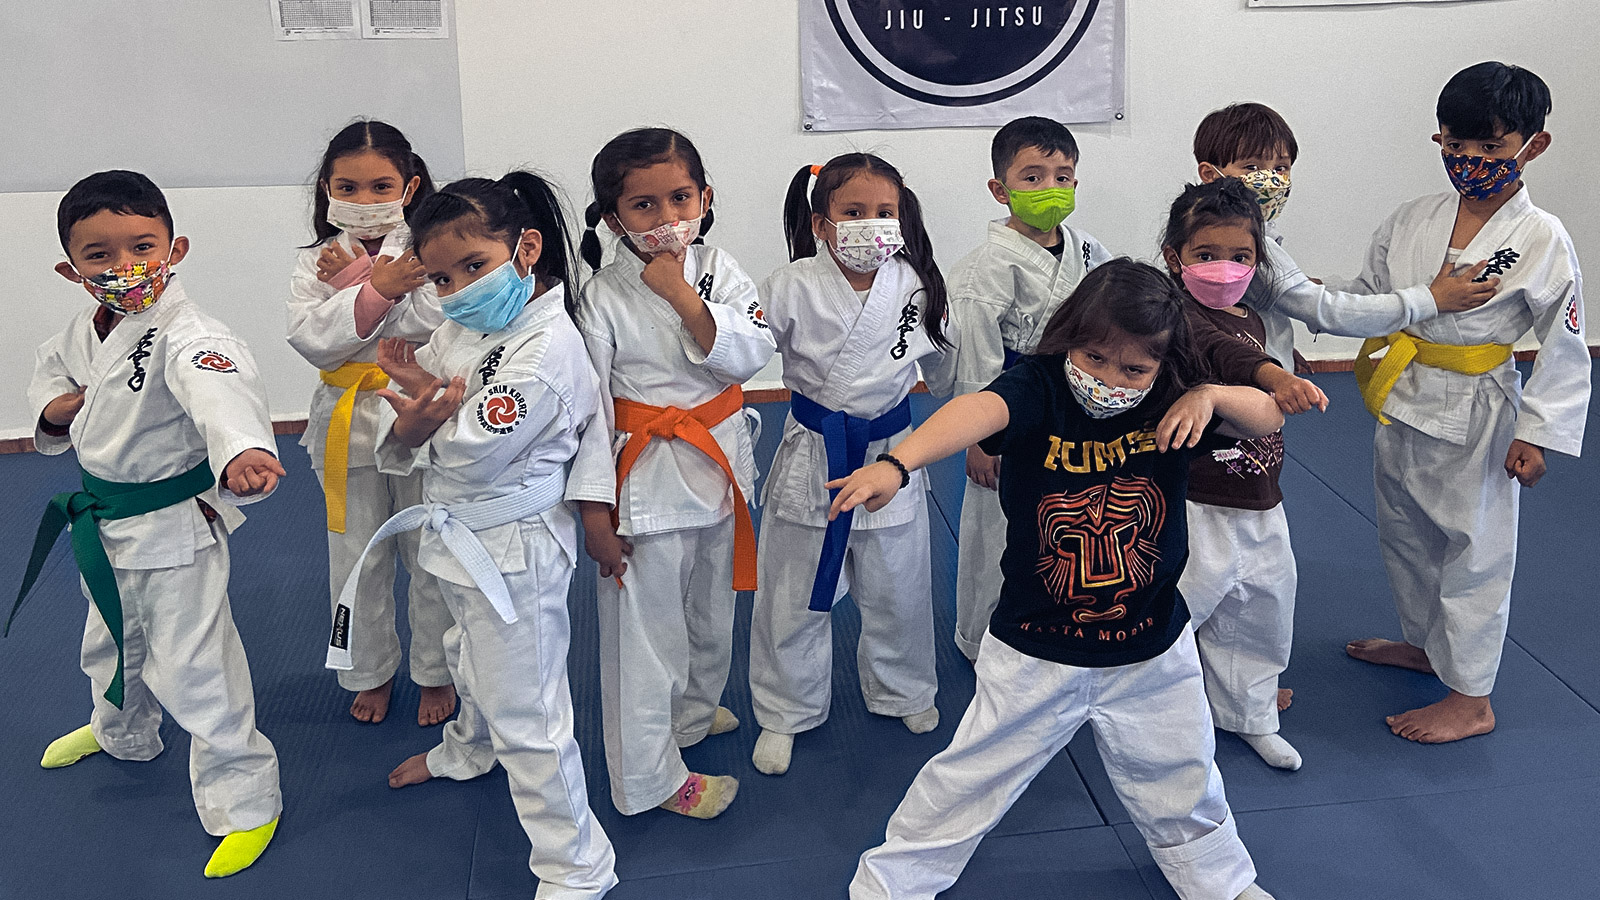 Niños pequeños practicando karate, jugando en su clase de karate